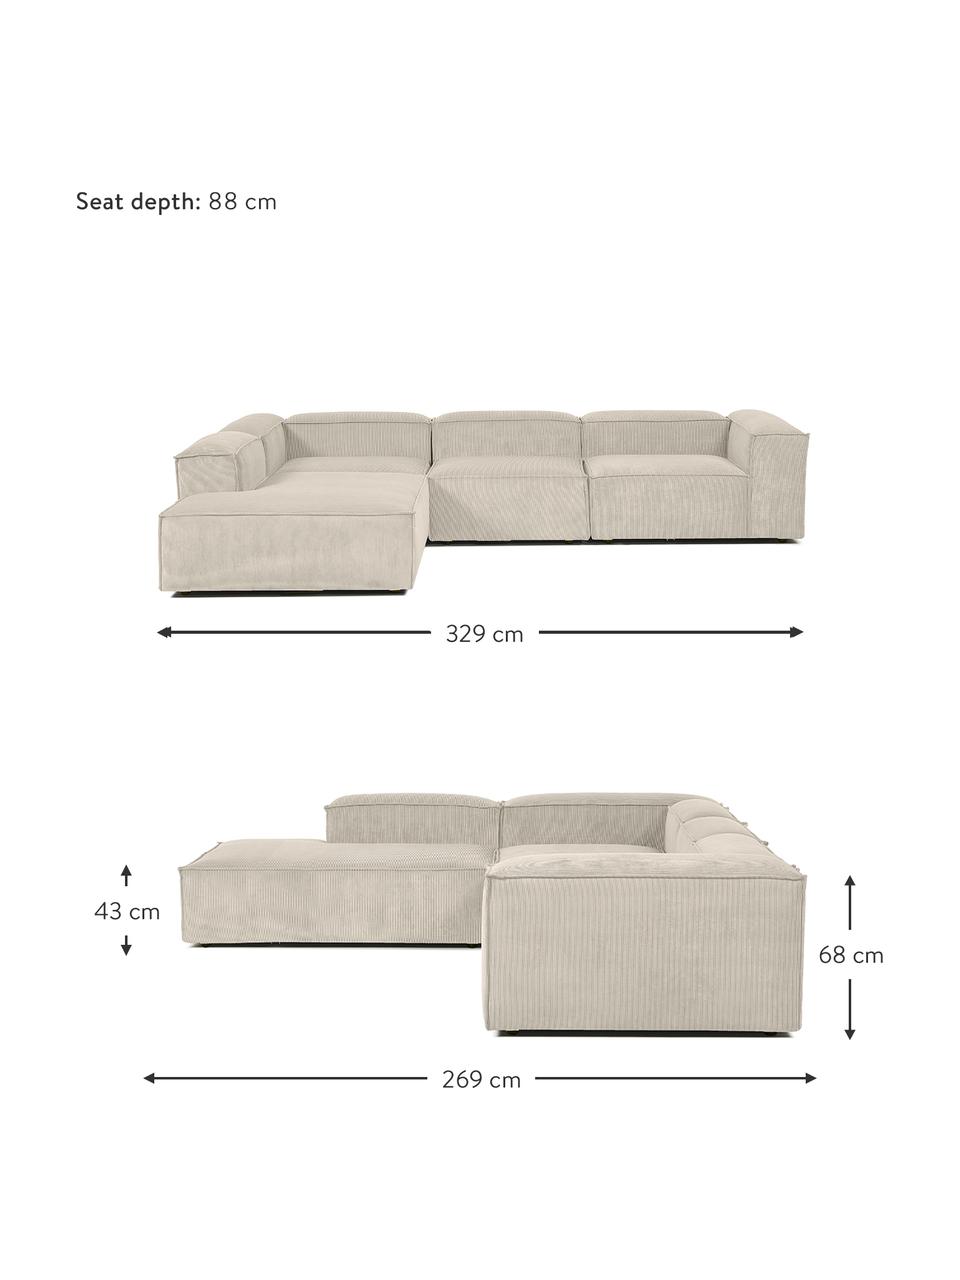 Narożna sofa modułowa XL ze sztruksu Lennon, Tapicerka: sztruks (92% poliester, 8, Stelaż: lite drewno, sklejka, Nogi: tworzywo sztuczne, Beżowy sztruks, S 329 x W 68 cm, lewostronna